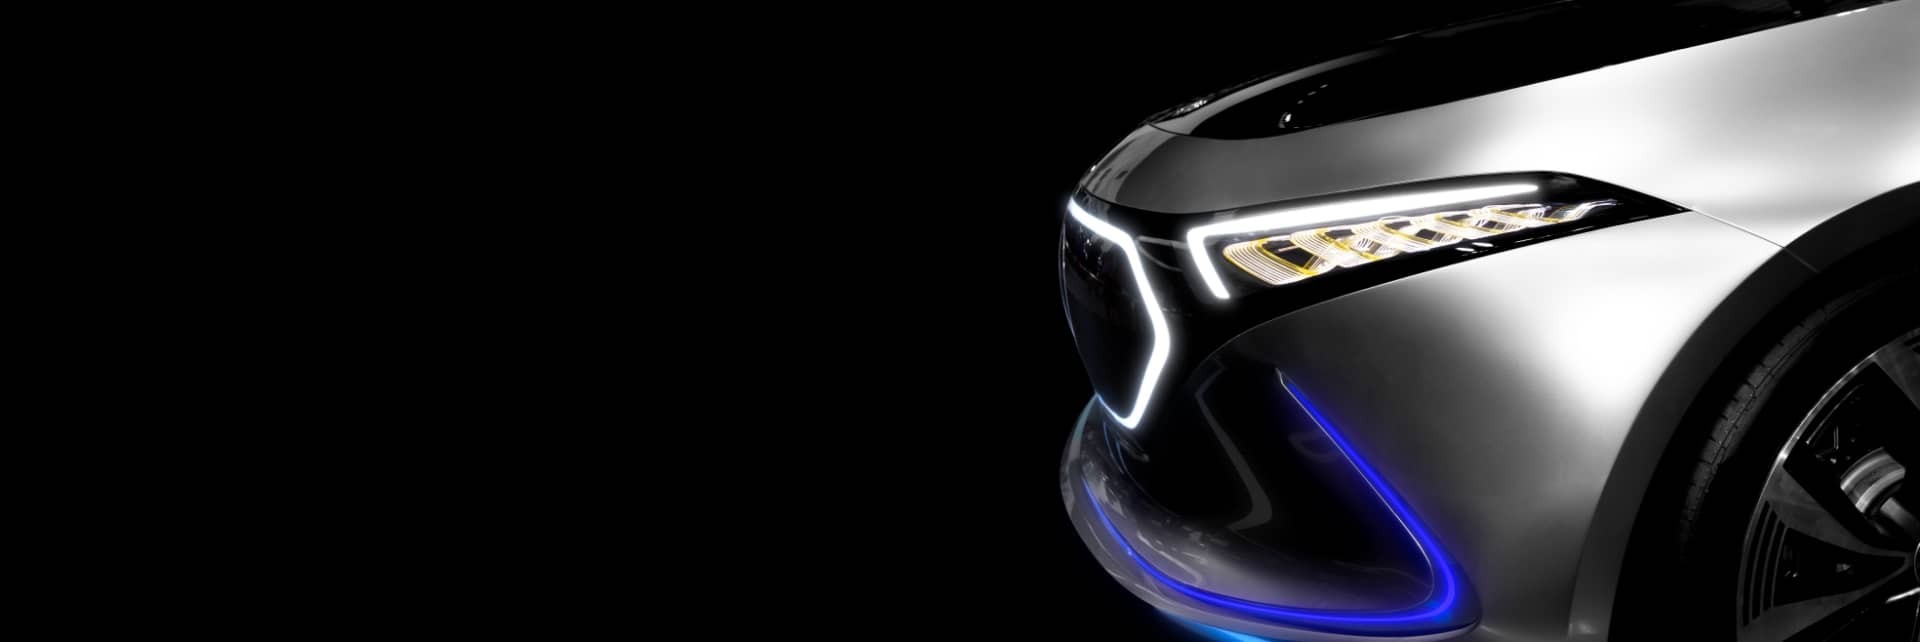 France-ledcar: kit LED et xénon pour voiture et moto